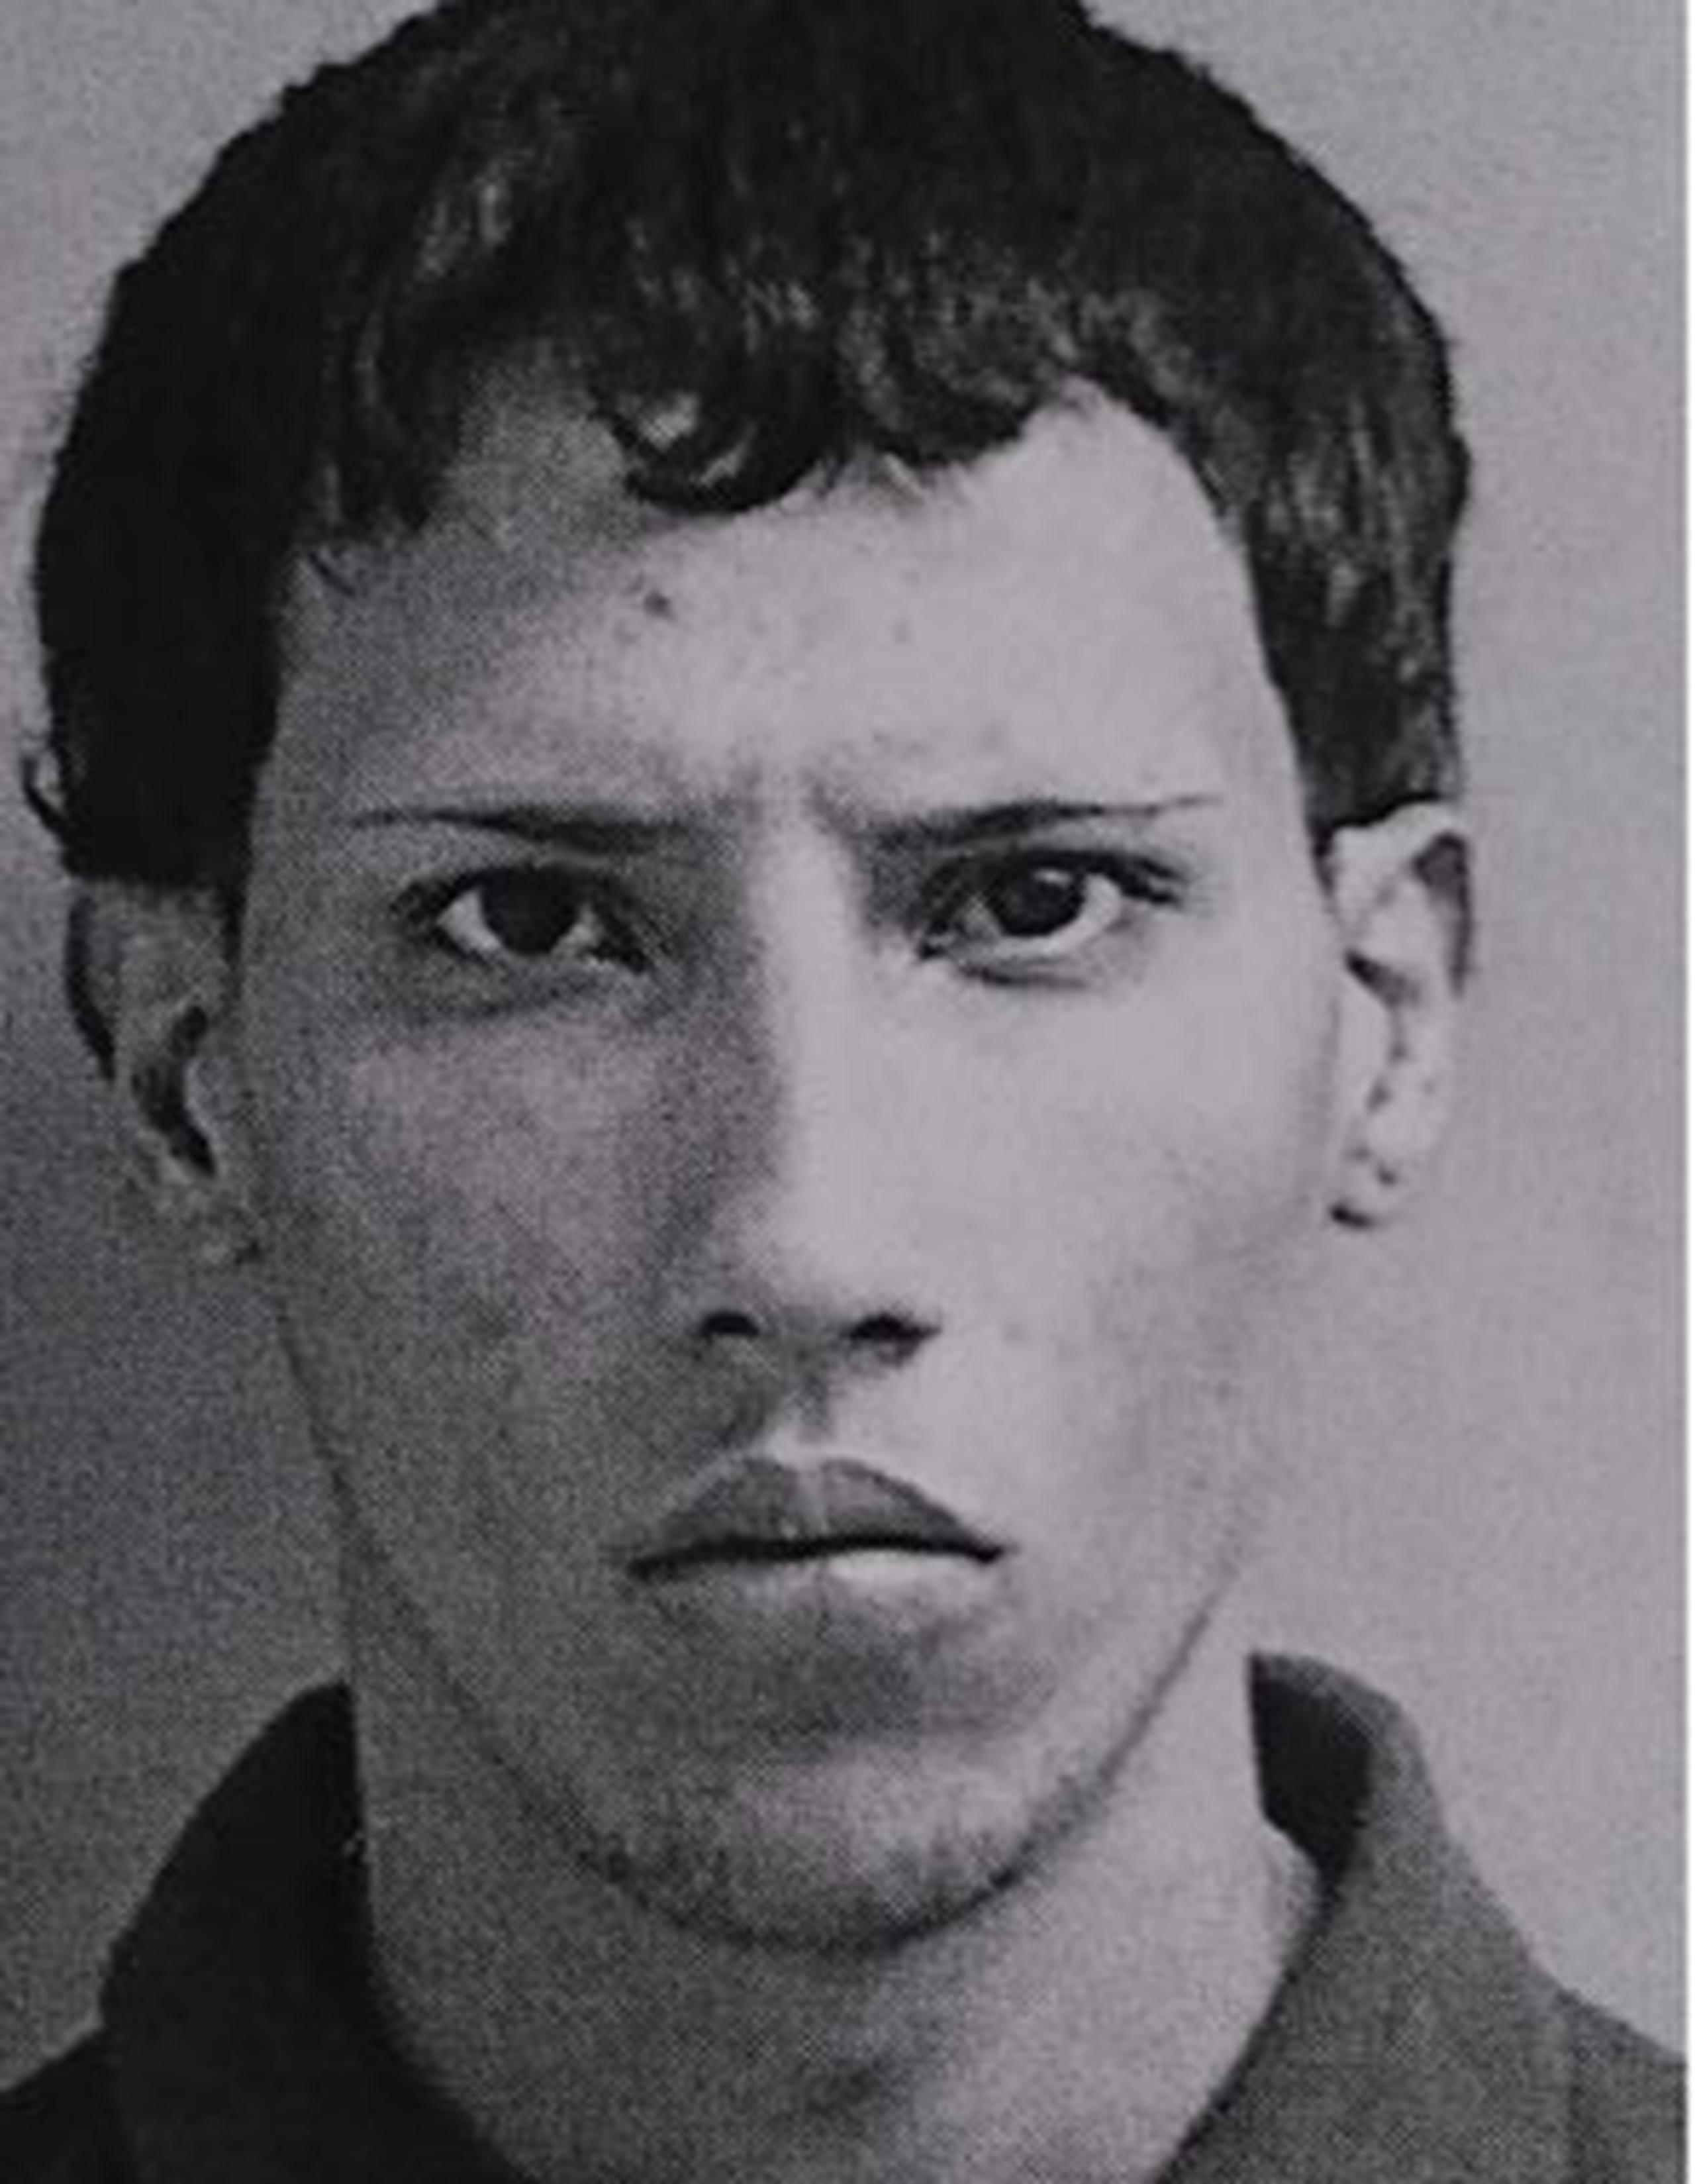 La víctima fue identificada en el informe de novedades como Arnaldo A. Oyola Cruz, de 25 años. (Suministrada)